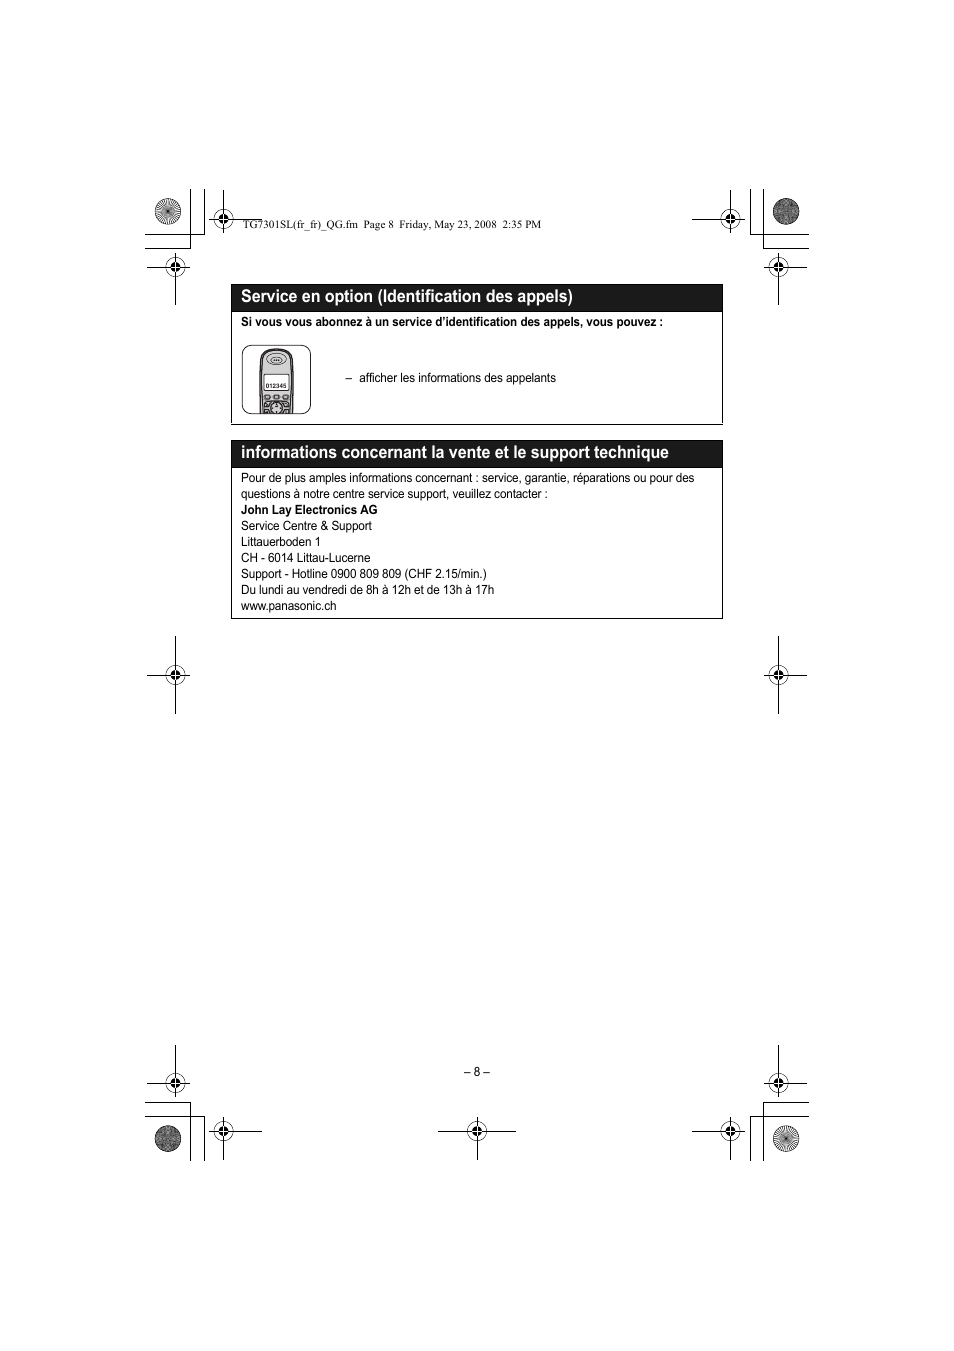 Service en option (identification des appels) | Panasonic KXTG7301SL Manuel d'utilisation | Page 8 / 8